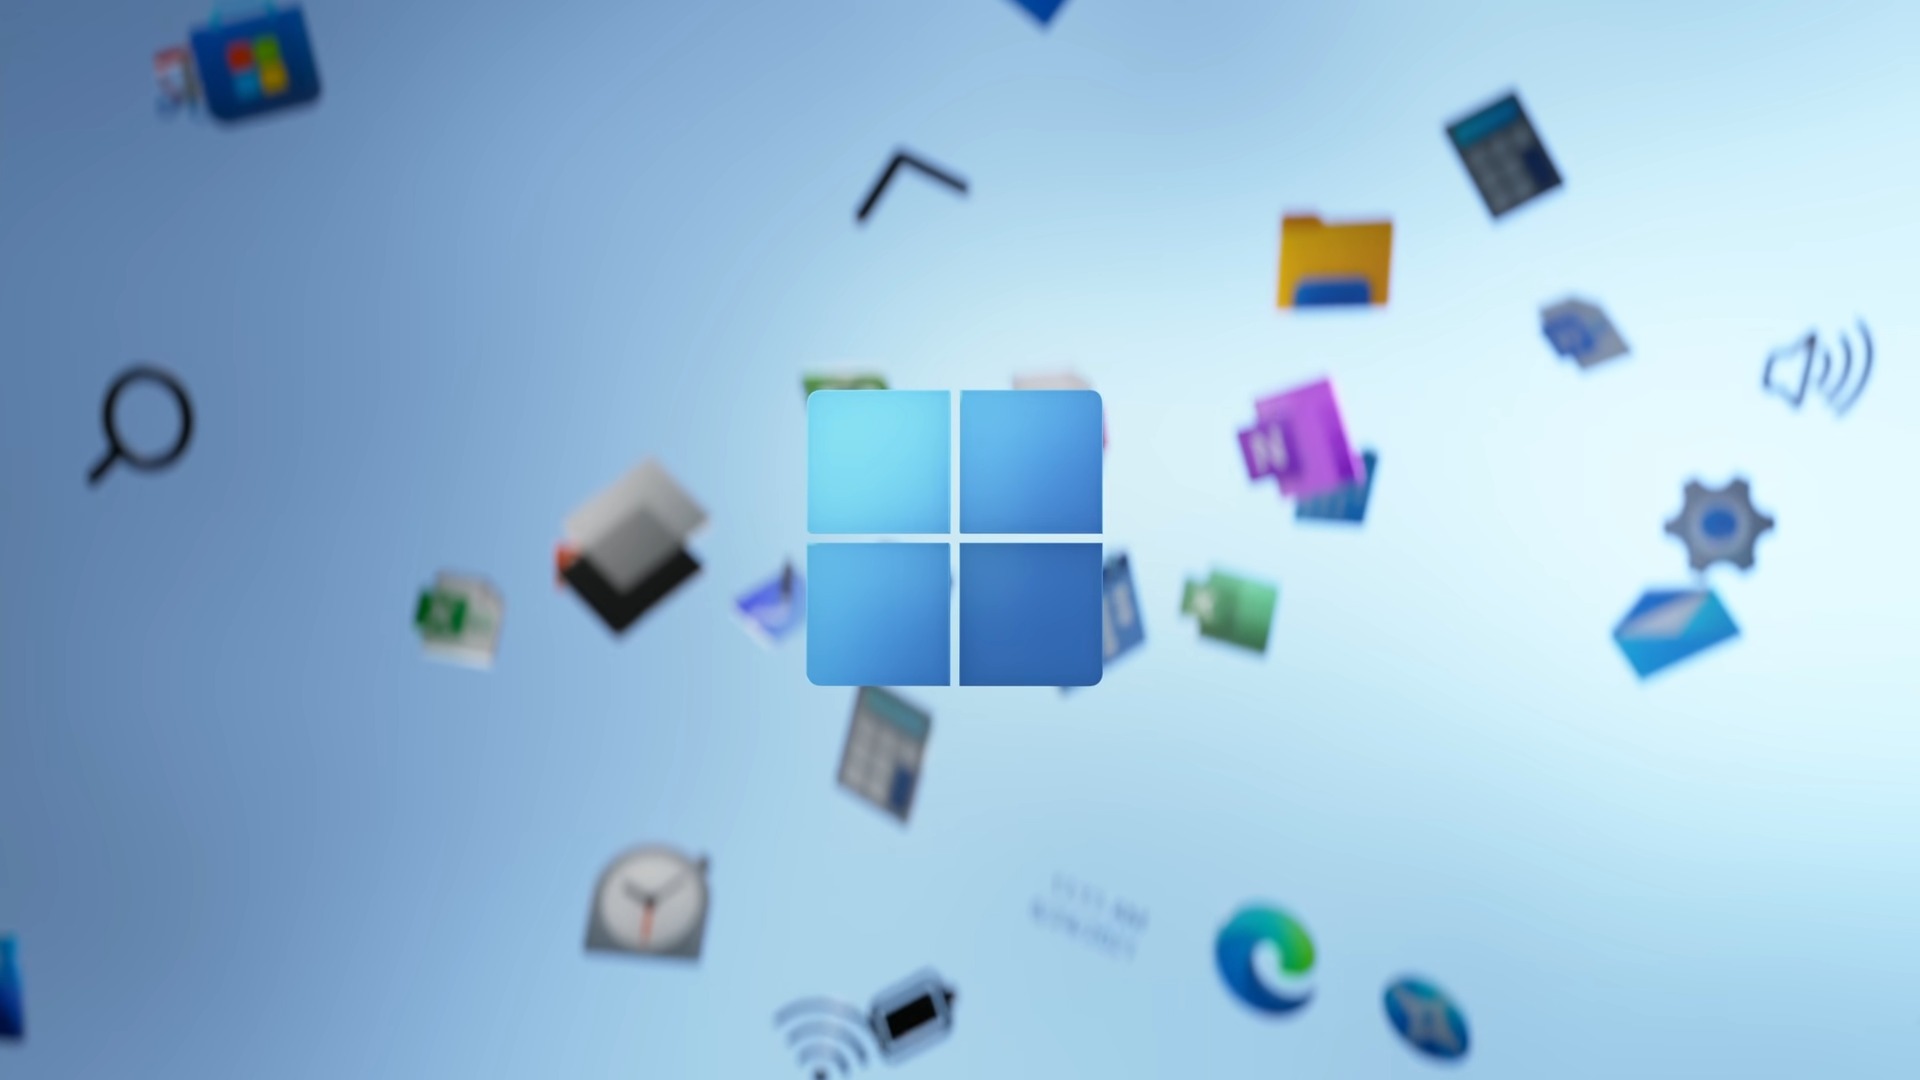 La próxima gran actualización de Windows es Windows 11 24H2, que se lanzará este año